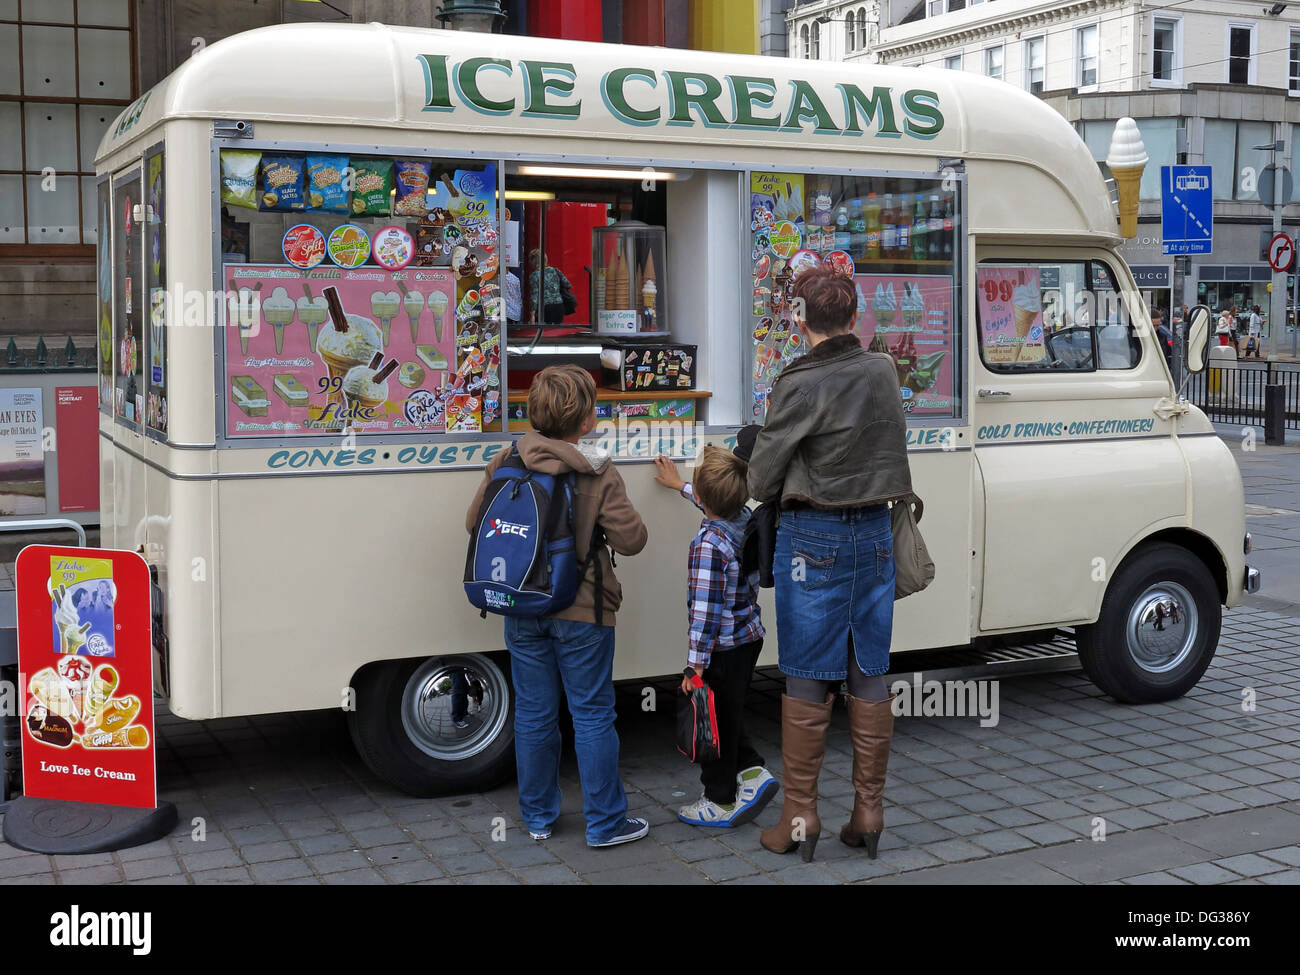 Femme Tasttee crème glacée de couleur crème classique van de 1960 dans le centre-ville d'Édimbourg en Écosse Royaume-uni 2013 Banque D'Images